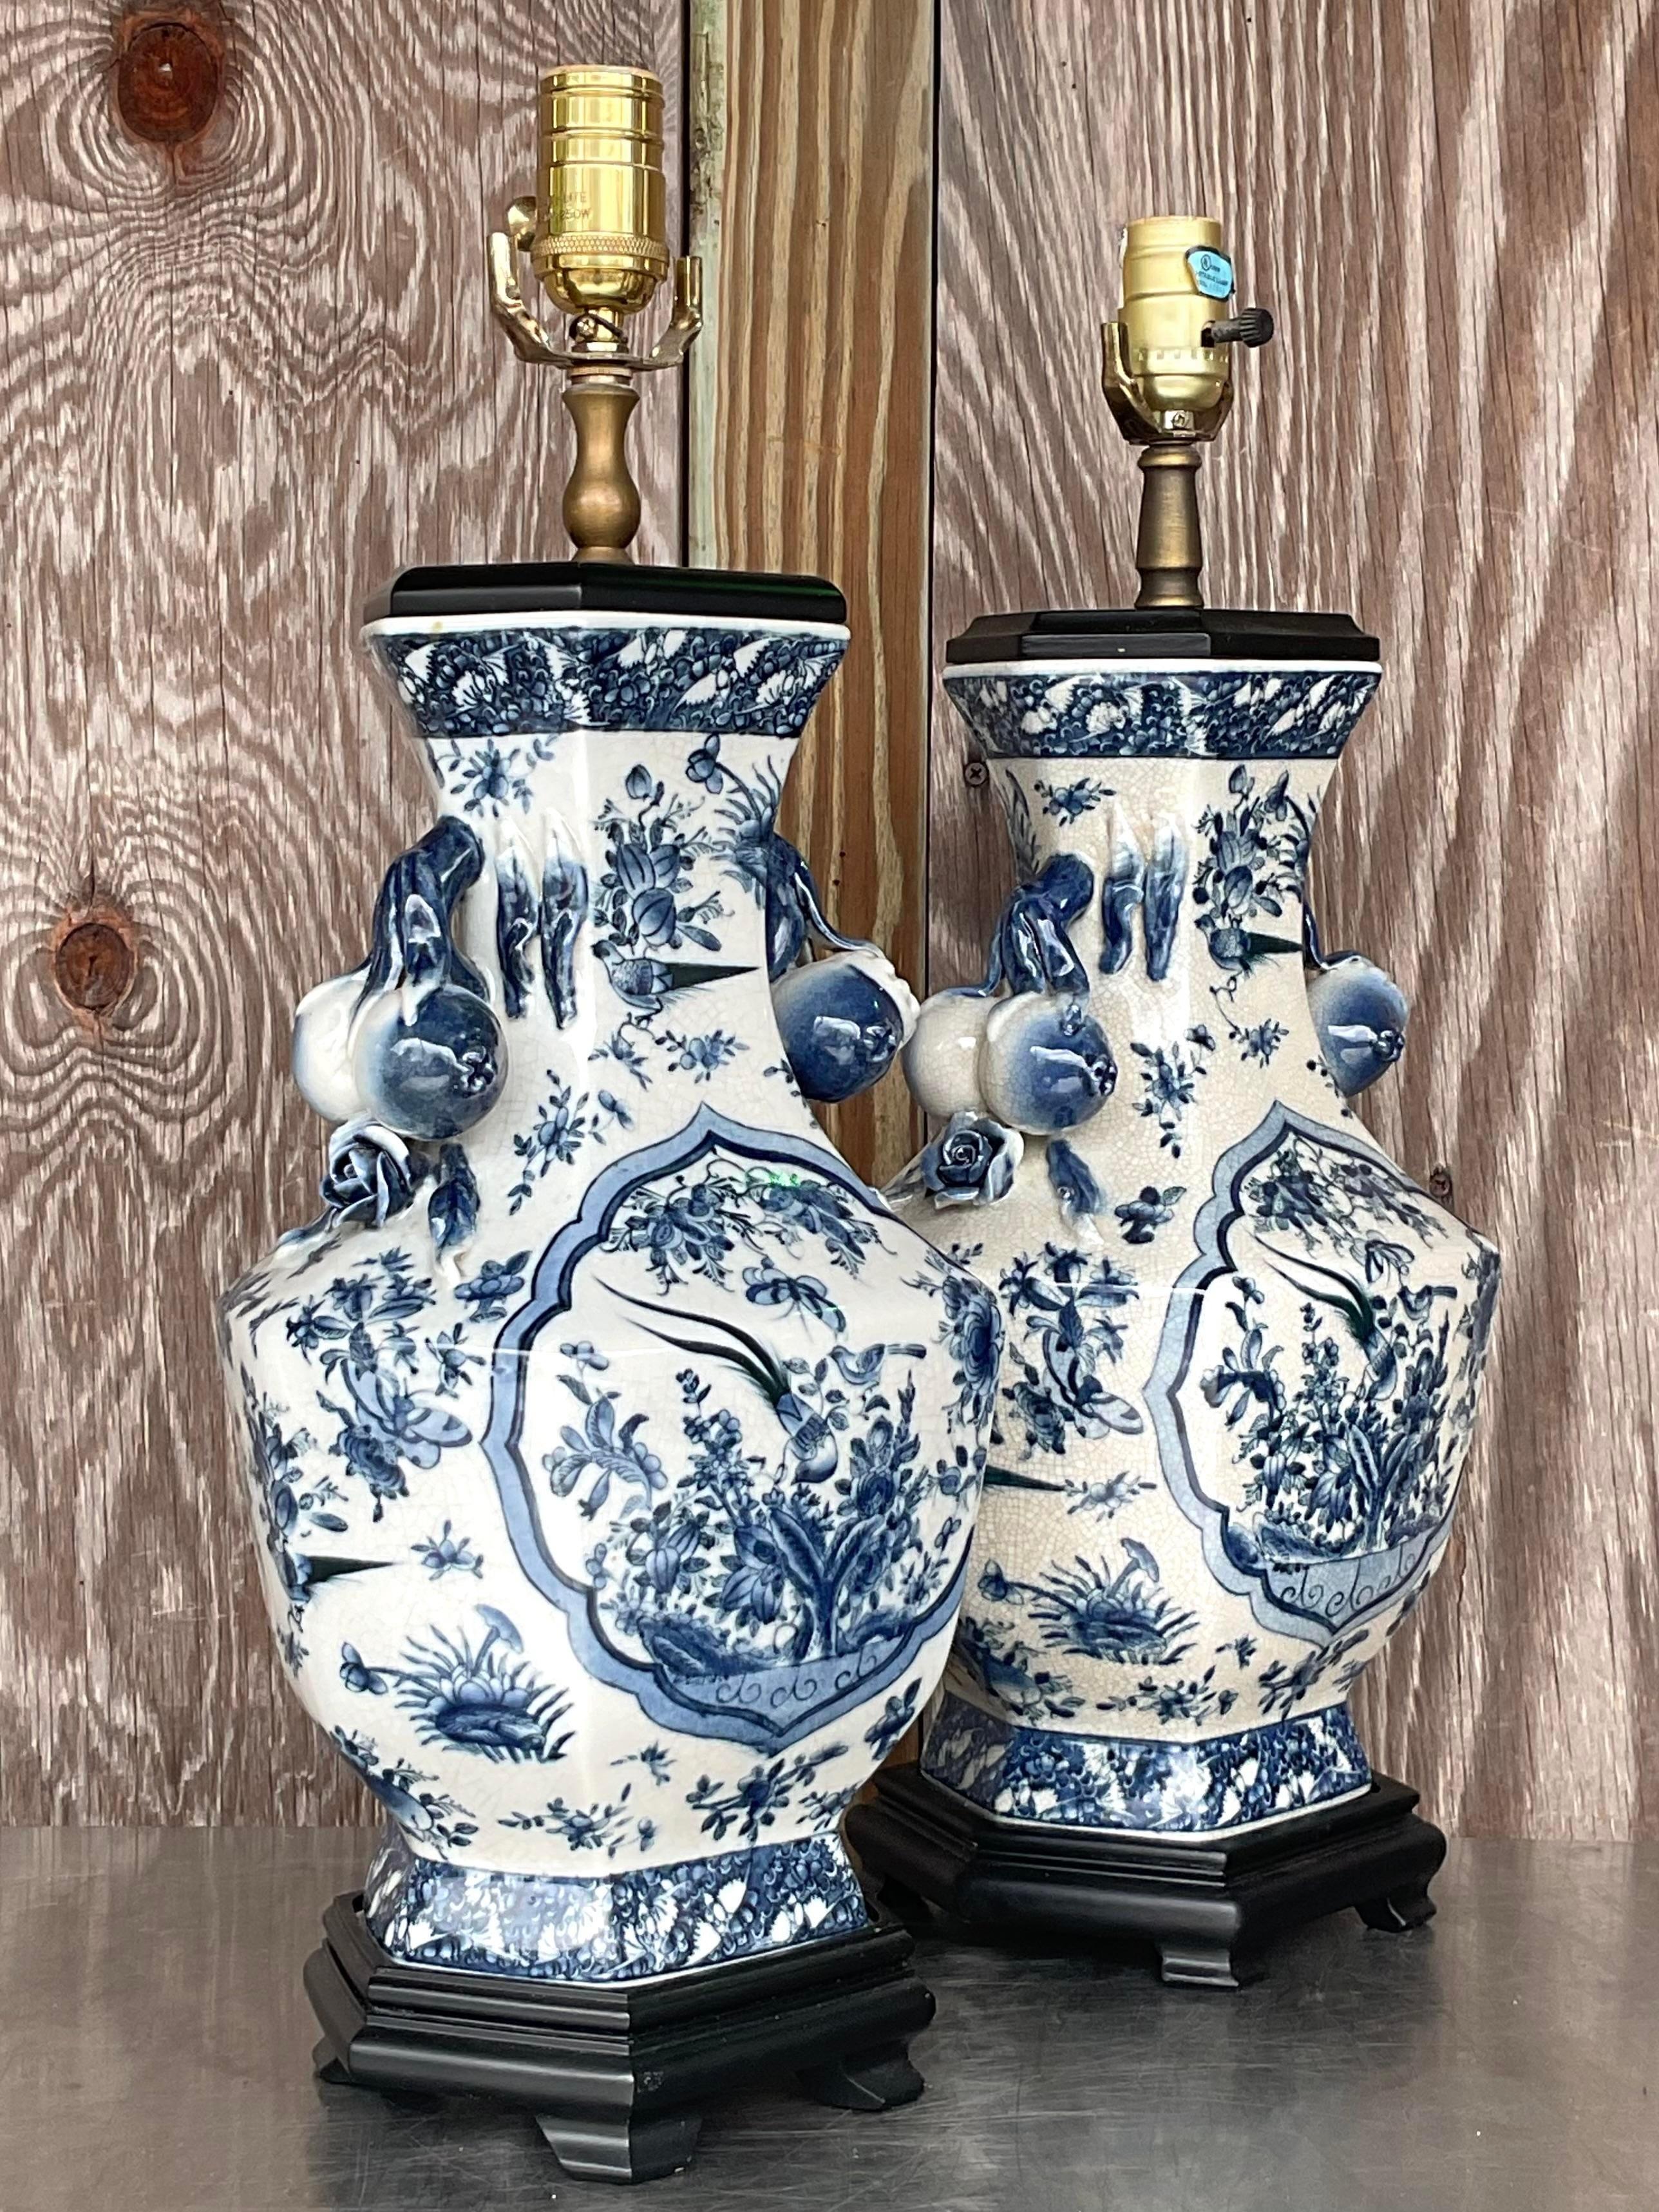 Beleuchten Sie mit Eleganz mit unseren asiatischen Vintage-Chinoiserie-Keramiklampen - ein Paar. Diese exquisiten Lampen zeigen traditionelles Chinoiserie-Design, das asiatische Kunstfertigkeit mit amerikanischer Raffinesse verbindet. Ein perfektes